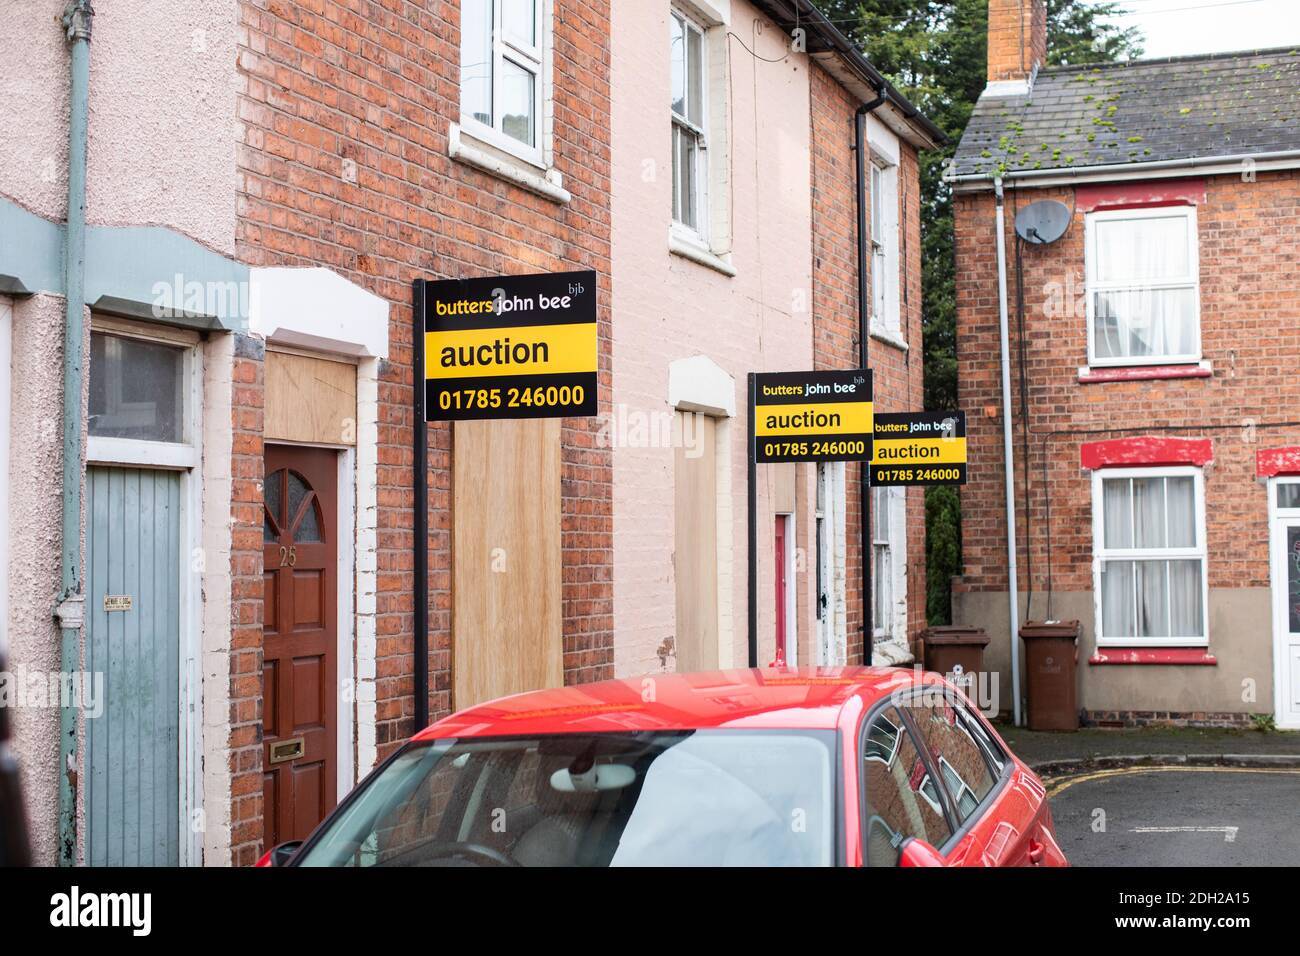 Maison pour les panneaux de vente aux enchères dans une rue du Royaume-Uni. 3 maisons prêtes à être placées sous le marteau Banque D'Images